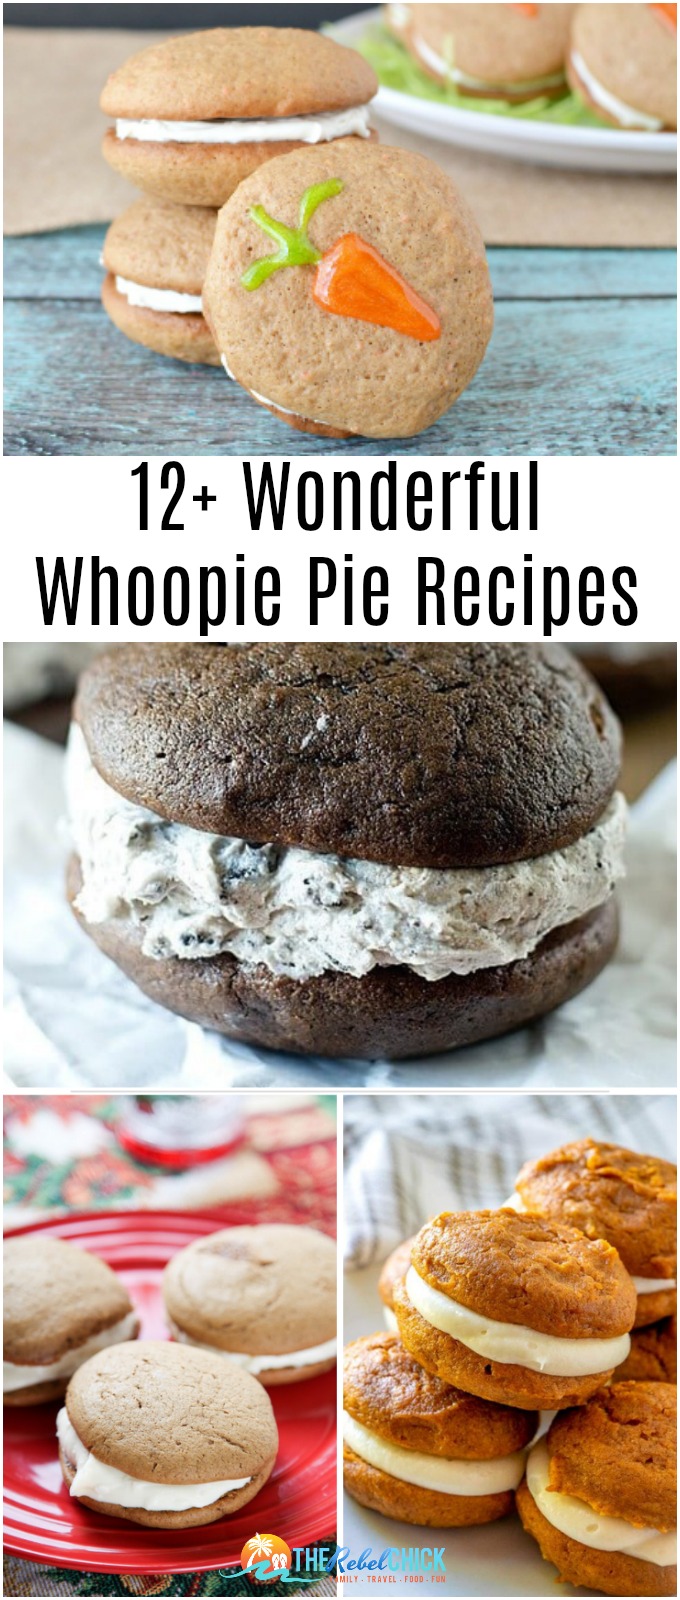 12+ Wonderful Whoopie Pie Recipes